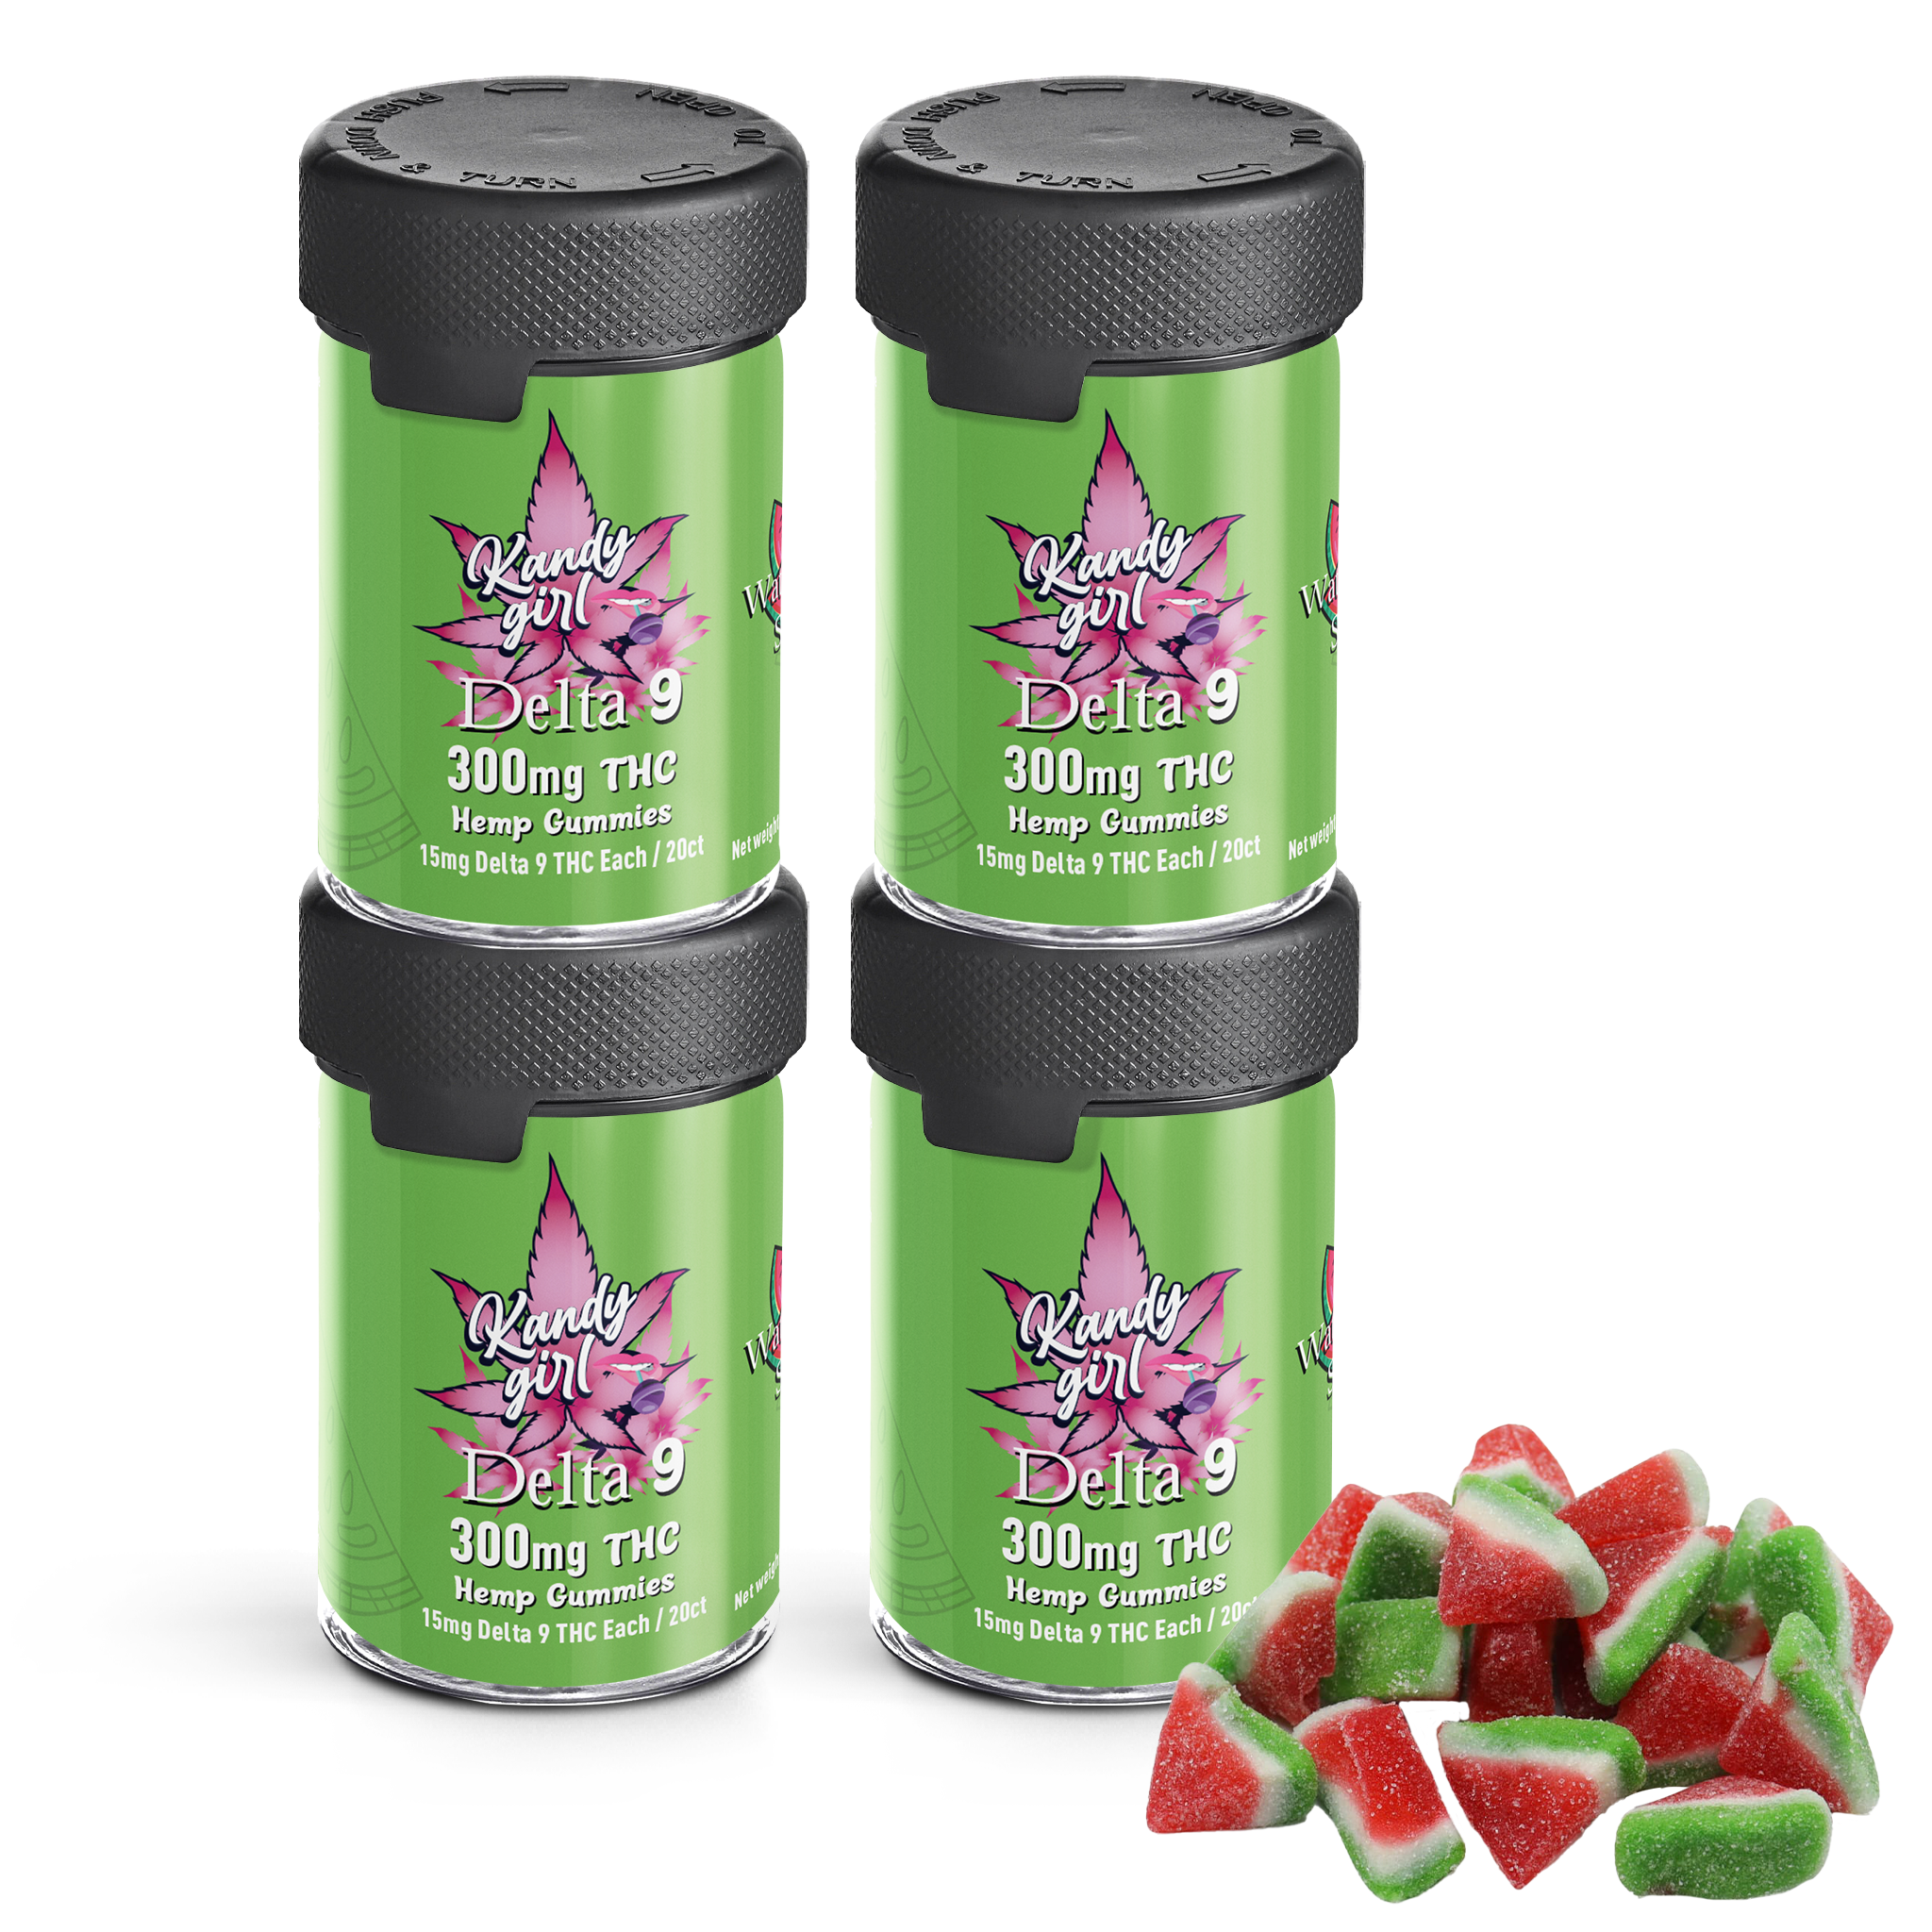 Delta 9 THC Gummies Watermelon Slices - Four Bottle Bundle (1200mg THC Total)